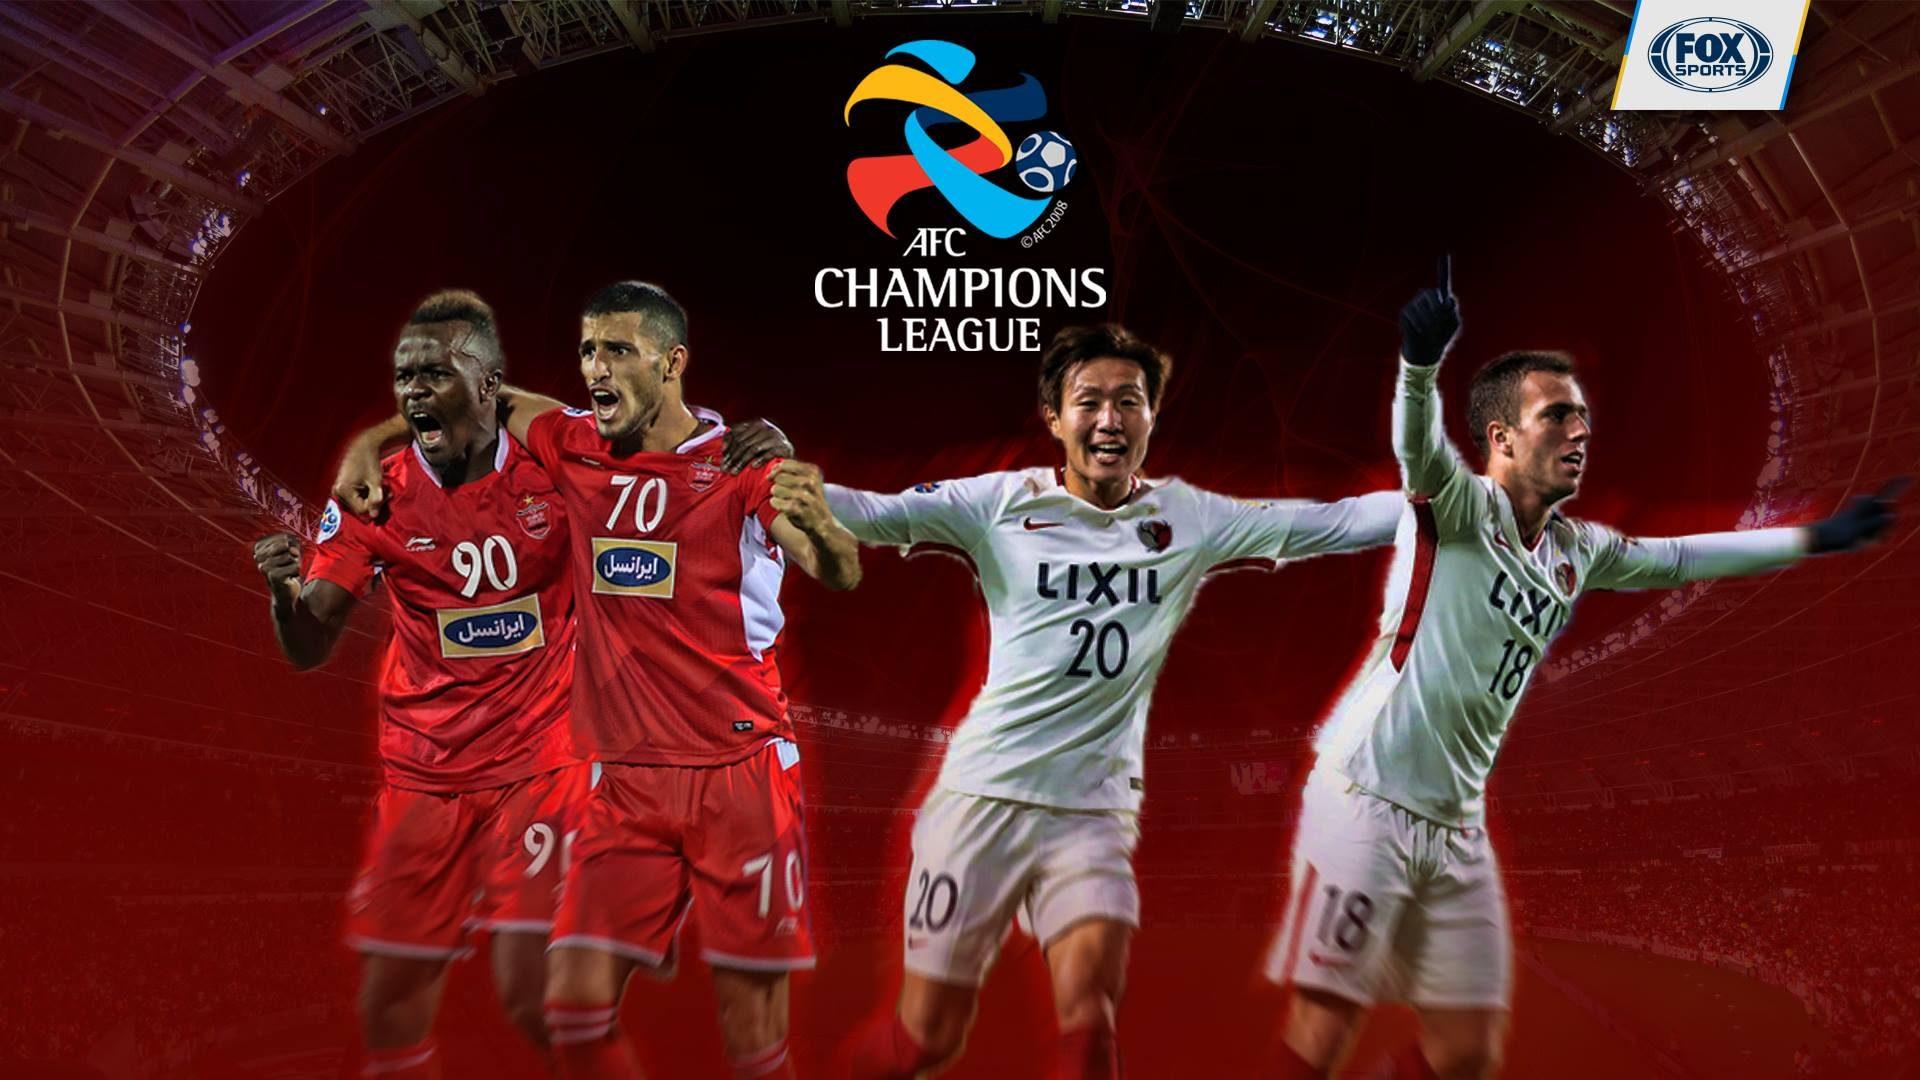 LIVE: AFC Champions League 2018 Final 2nd Leg